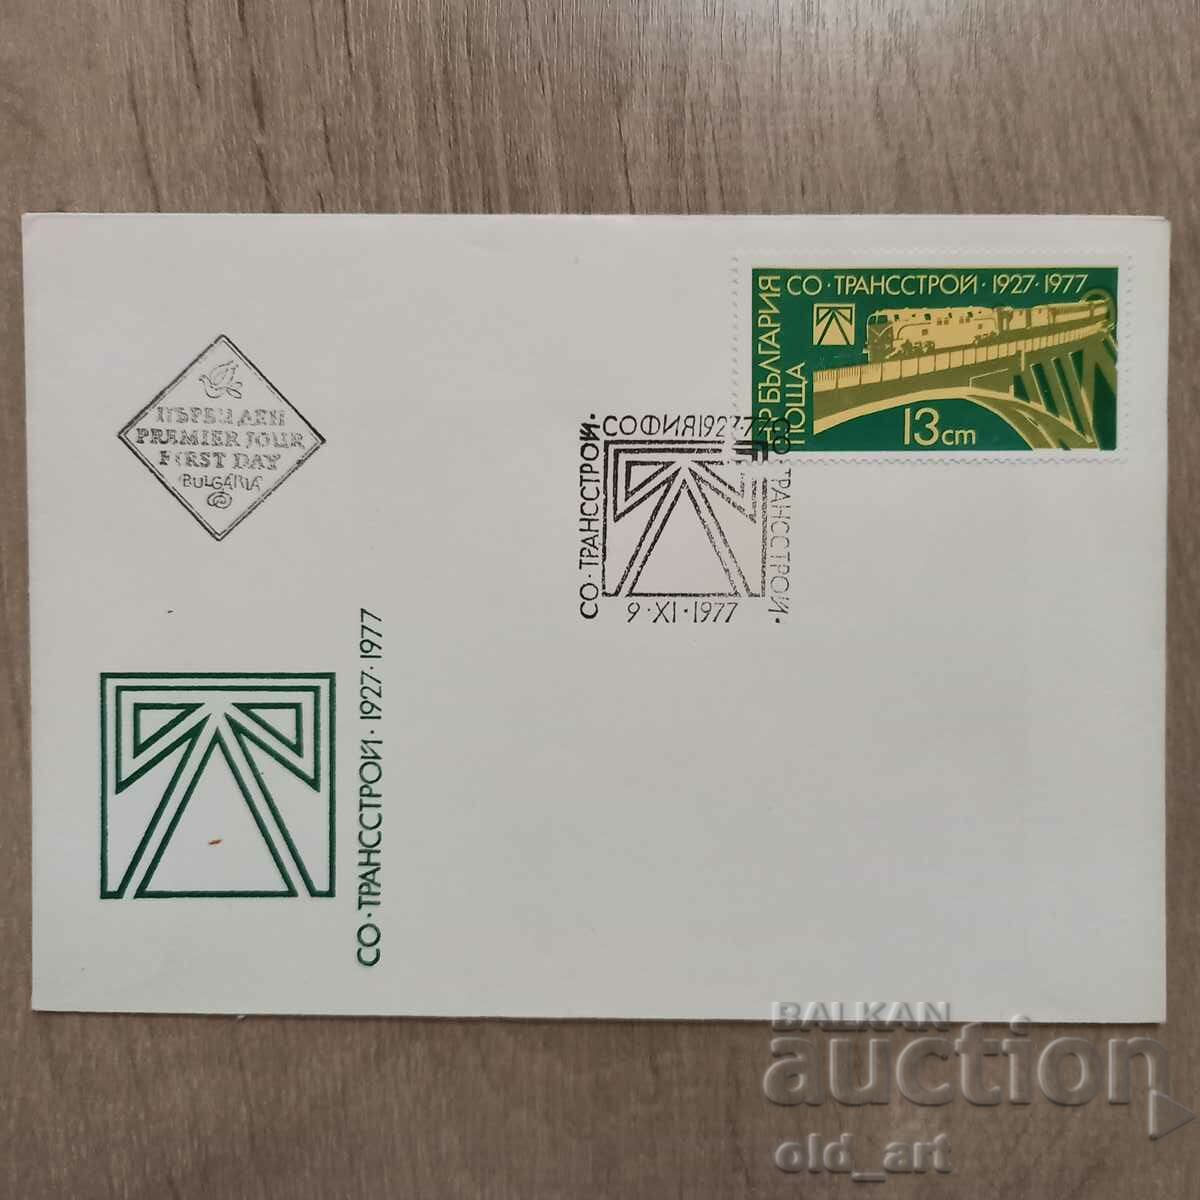 Ταχυδρομικός φάκελος - 50 χρόνια SO Transstroy